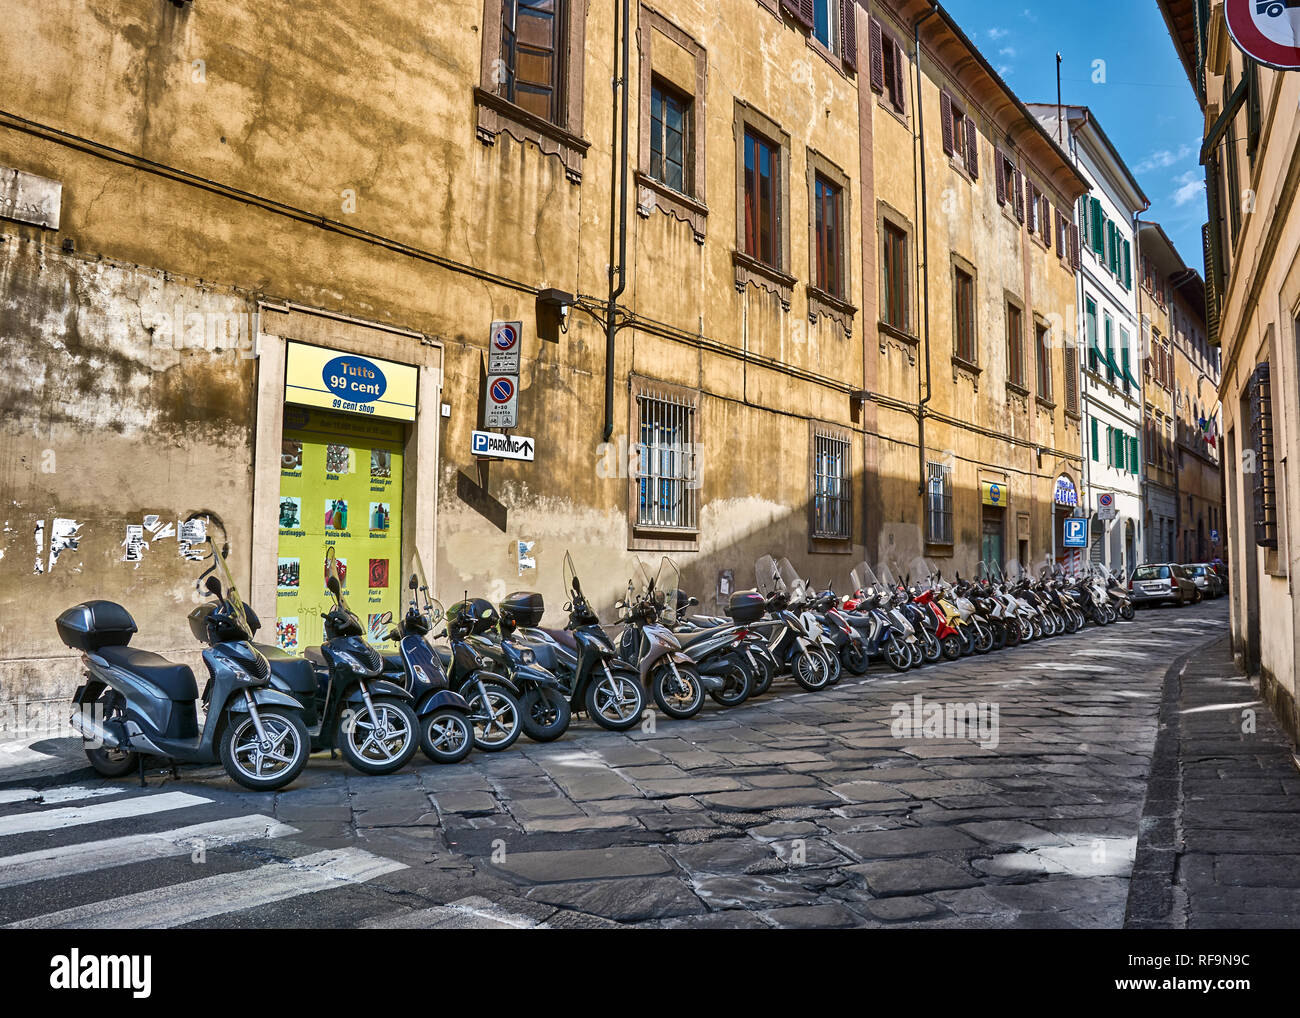 Moto parcheggiate su strada stretta a Firenze, Italia, e circondato da vecchi appartamenti. Foto Stock